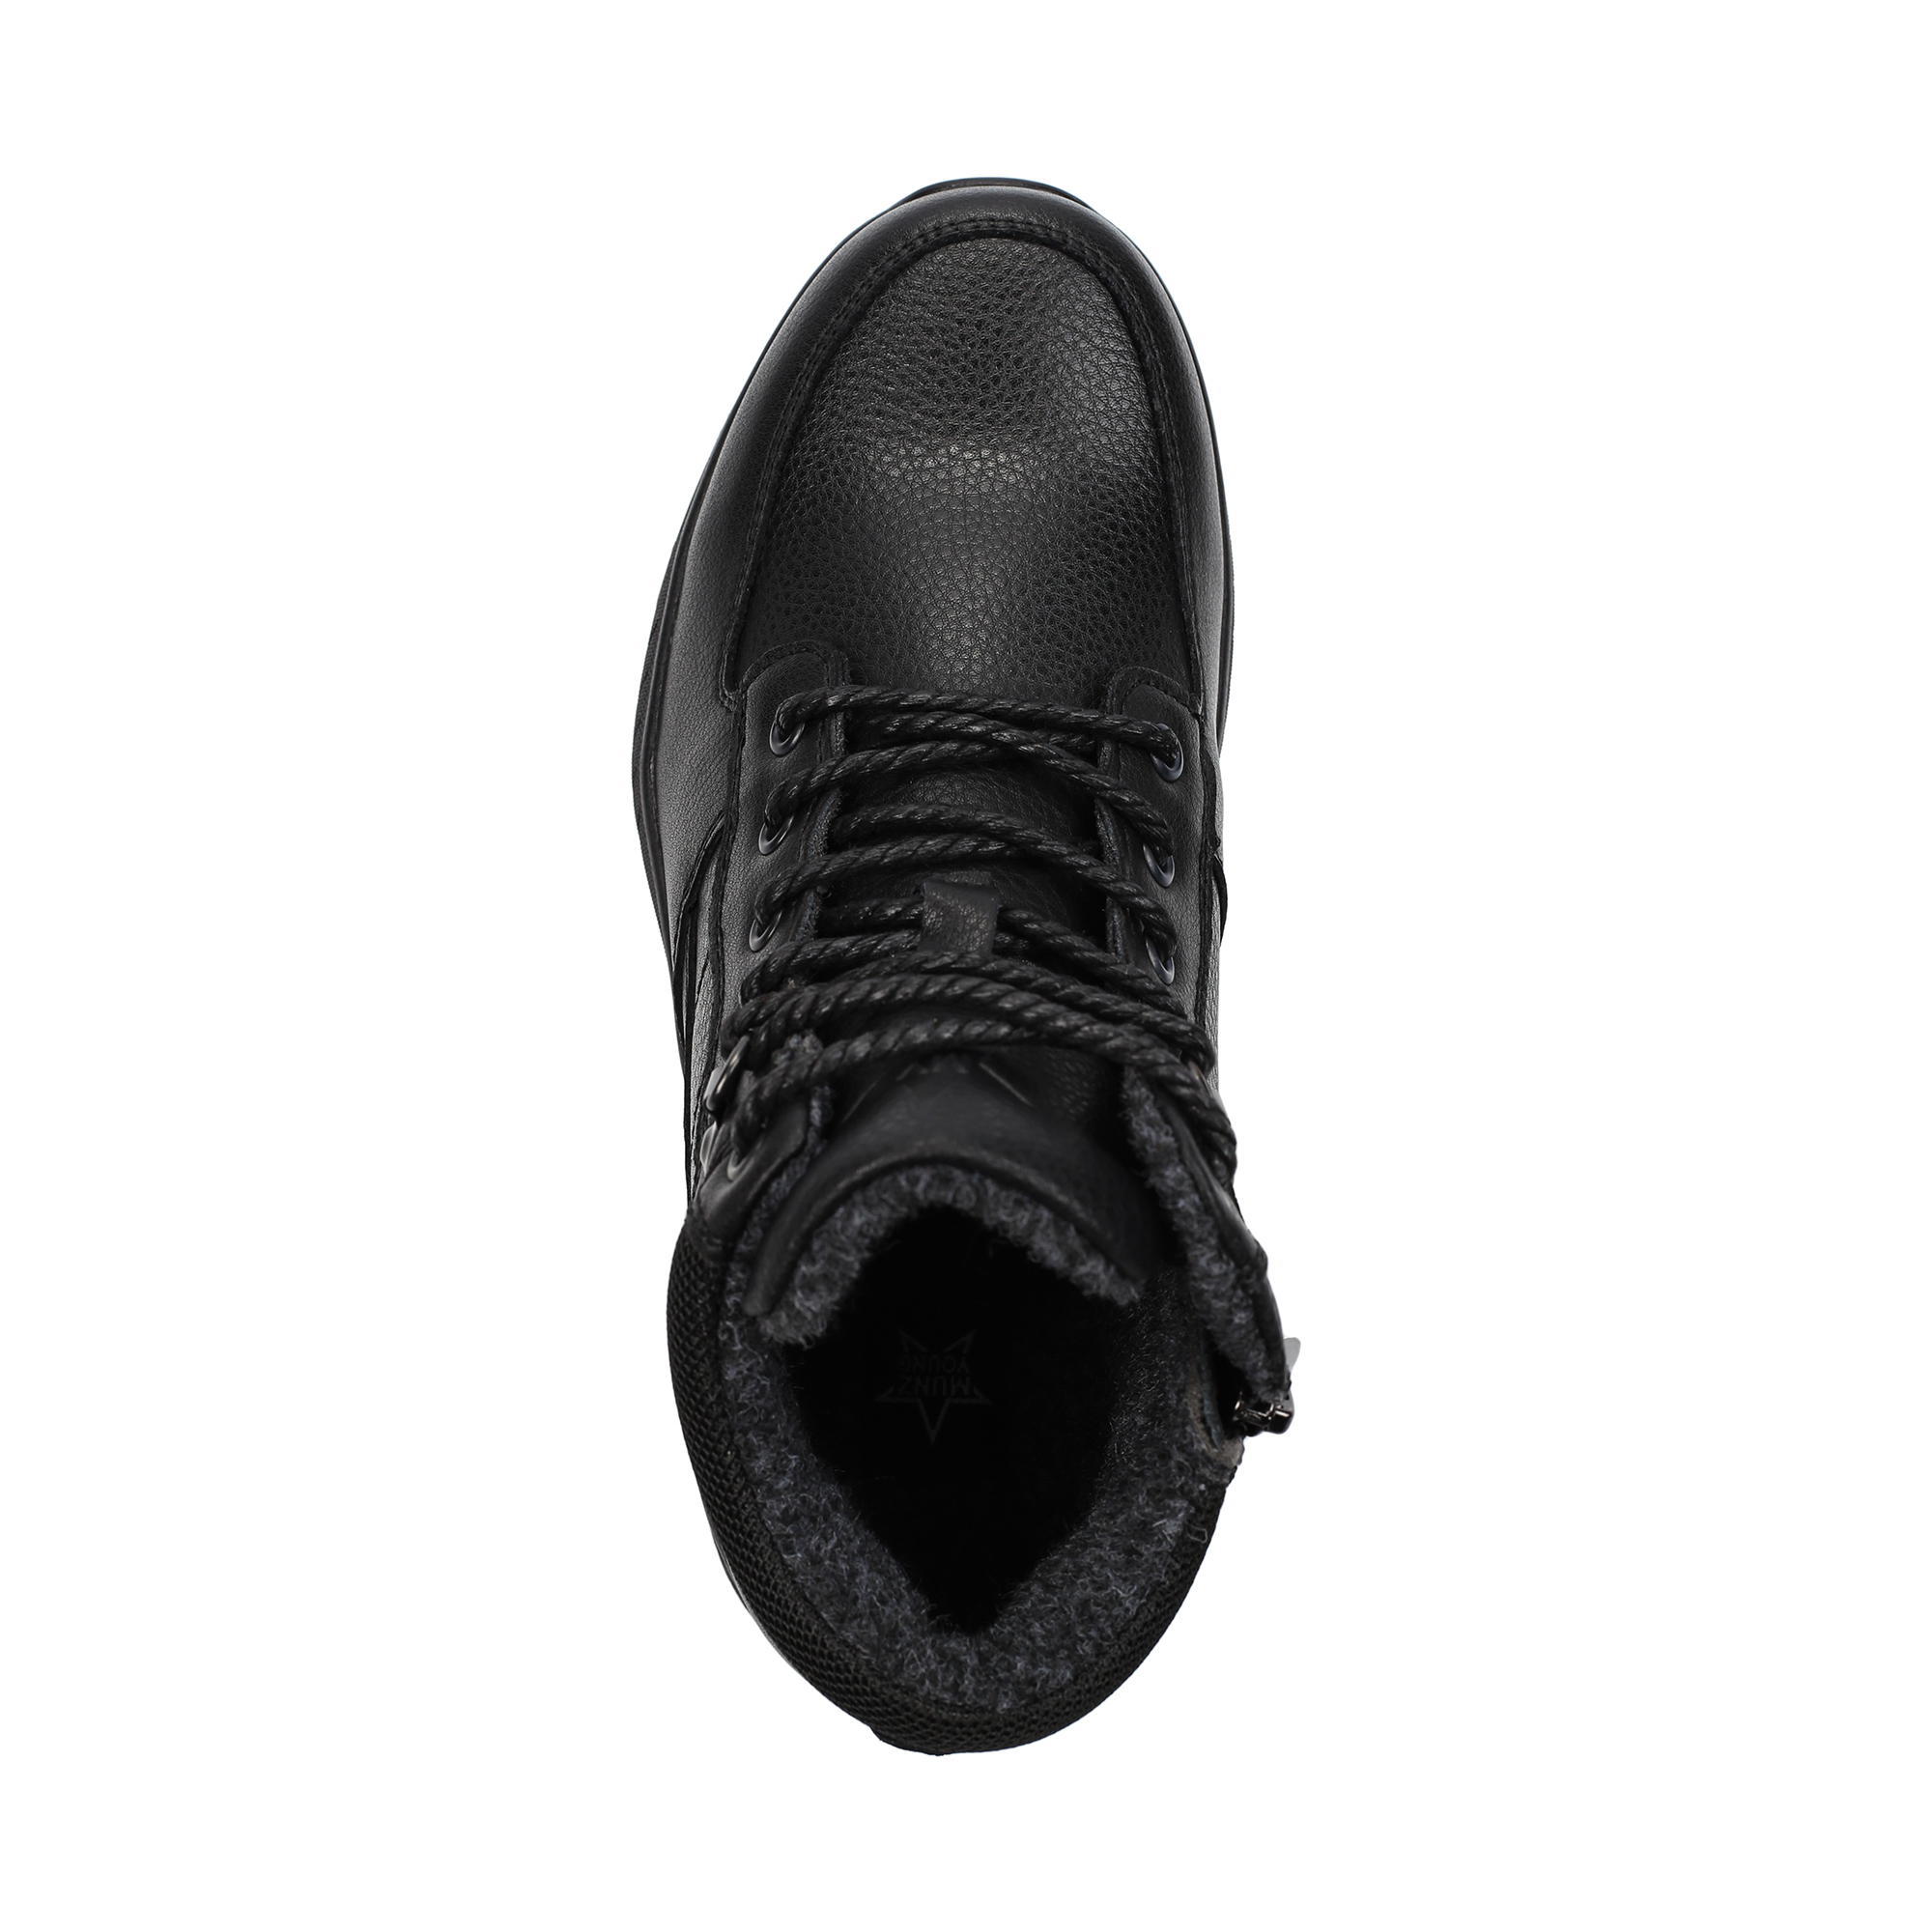 Ботинки MUNZ YOUNG 116-425A-74602, цвет черный, размер 39 - фото 5